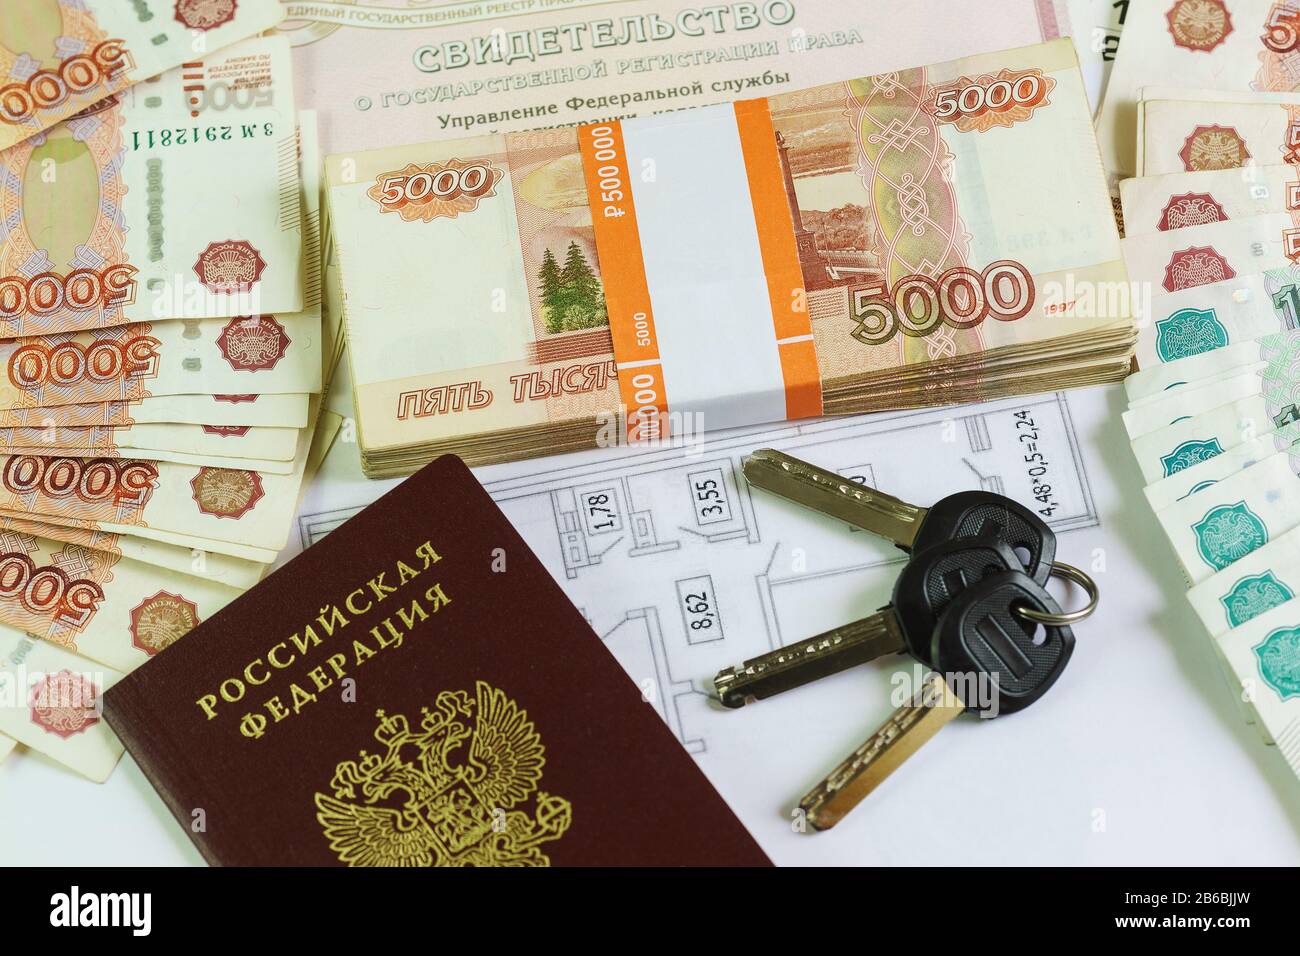 Beschriftung auf Russisch: Bescheinigung über die staatliche Registrierung von Immobilien. Reisepass, Plan und Schlüssel zum großen Teil russischen Geldes. Käuflich Stockfoto